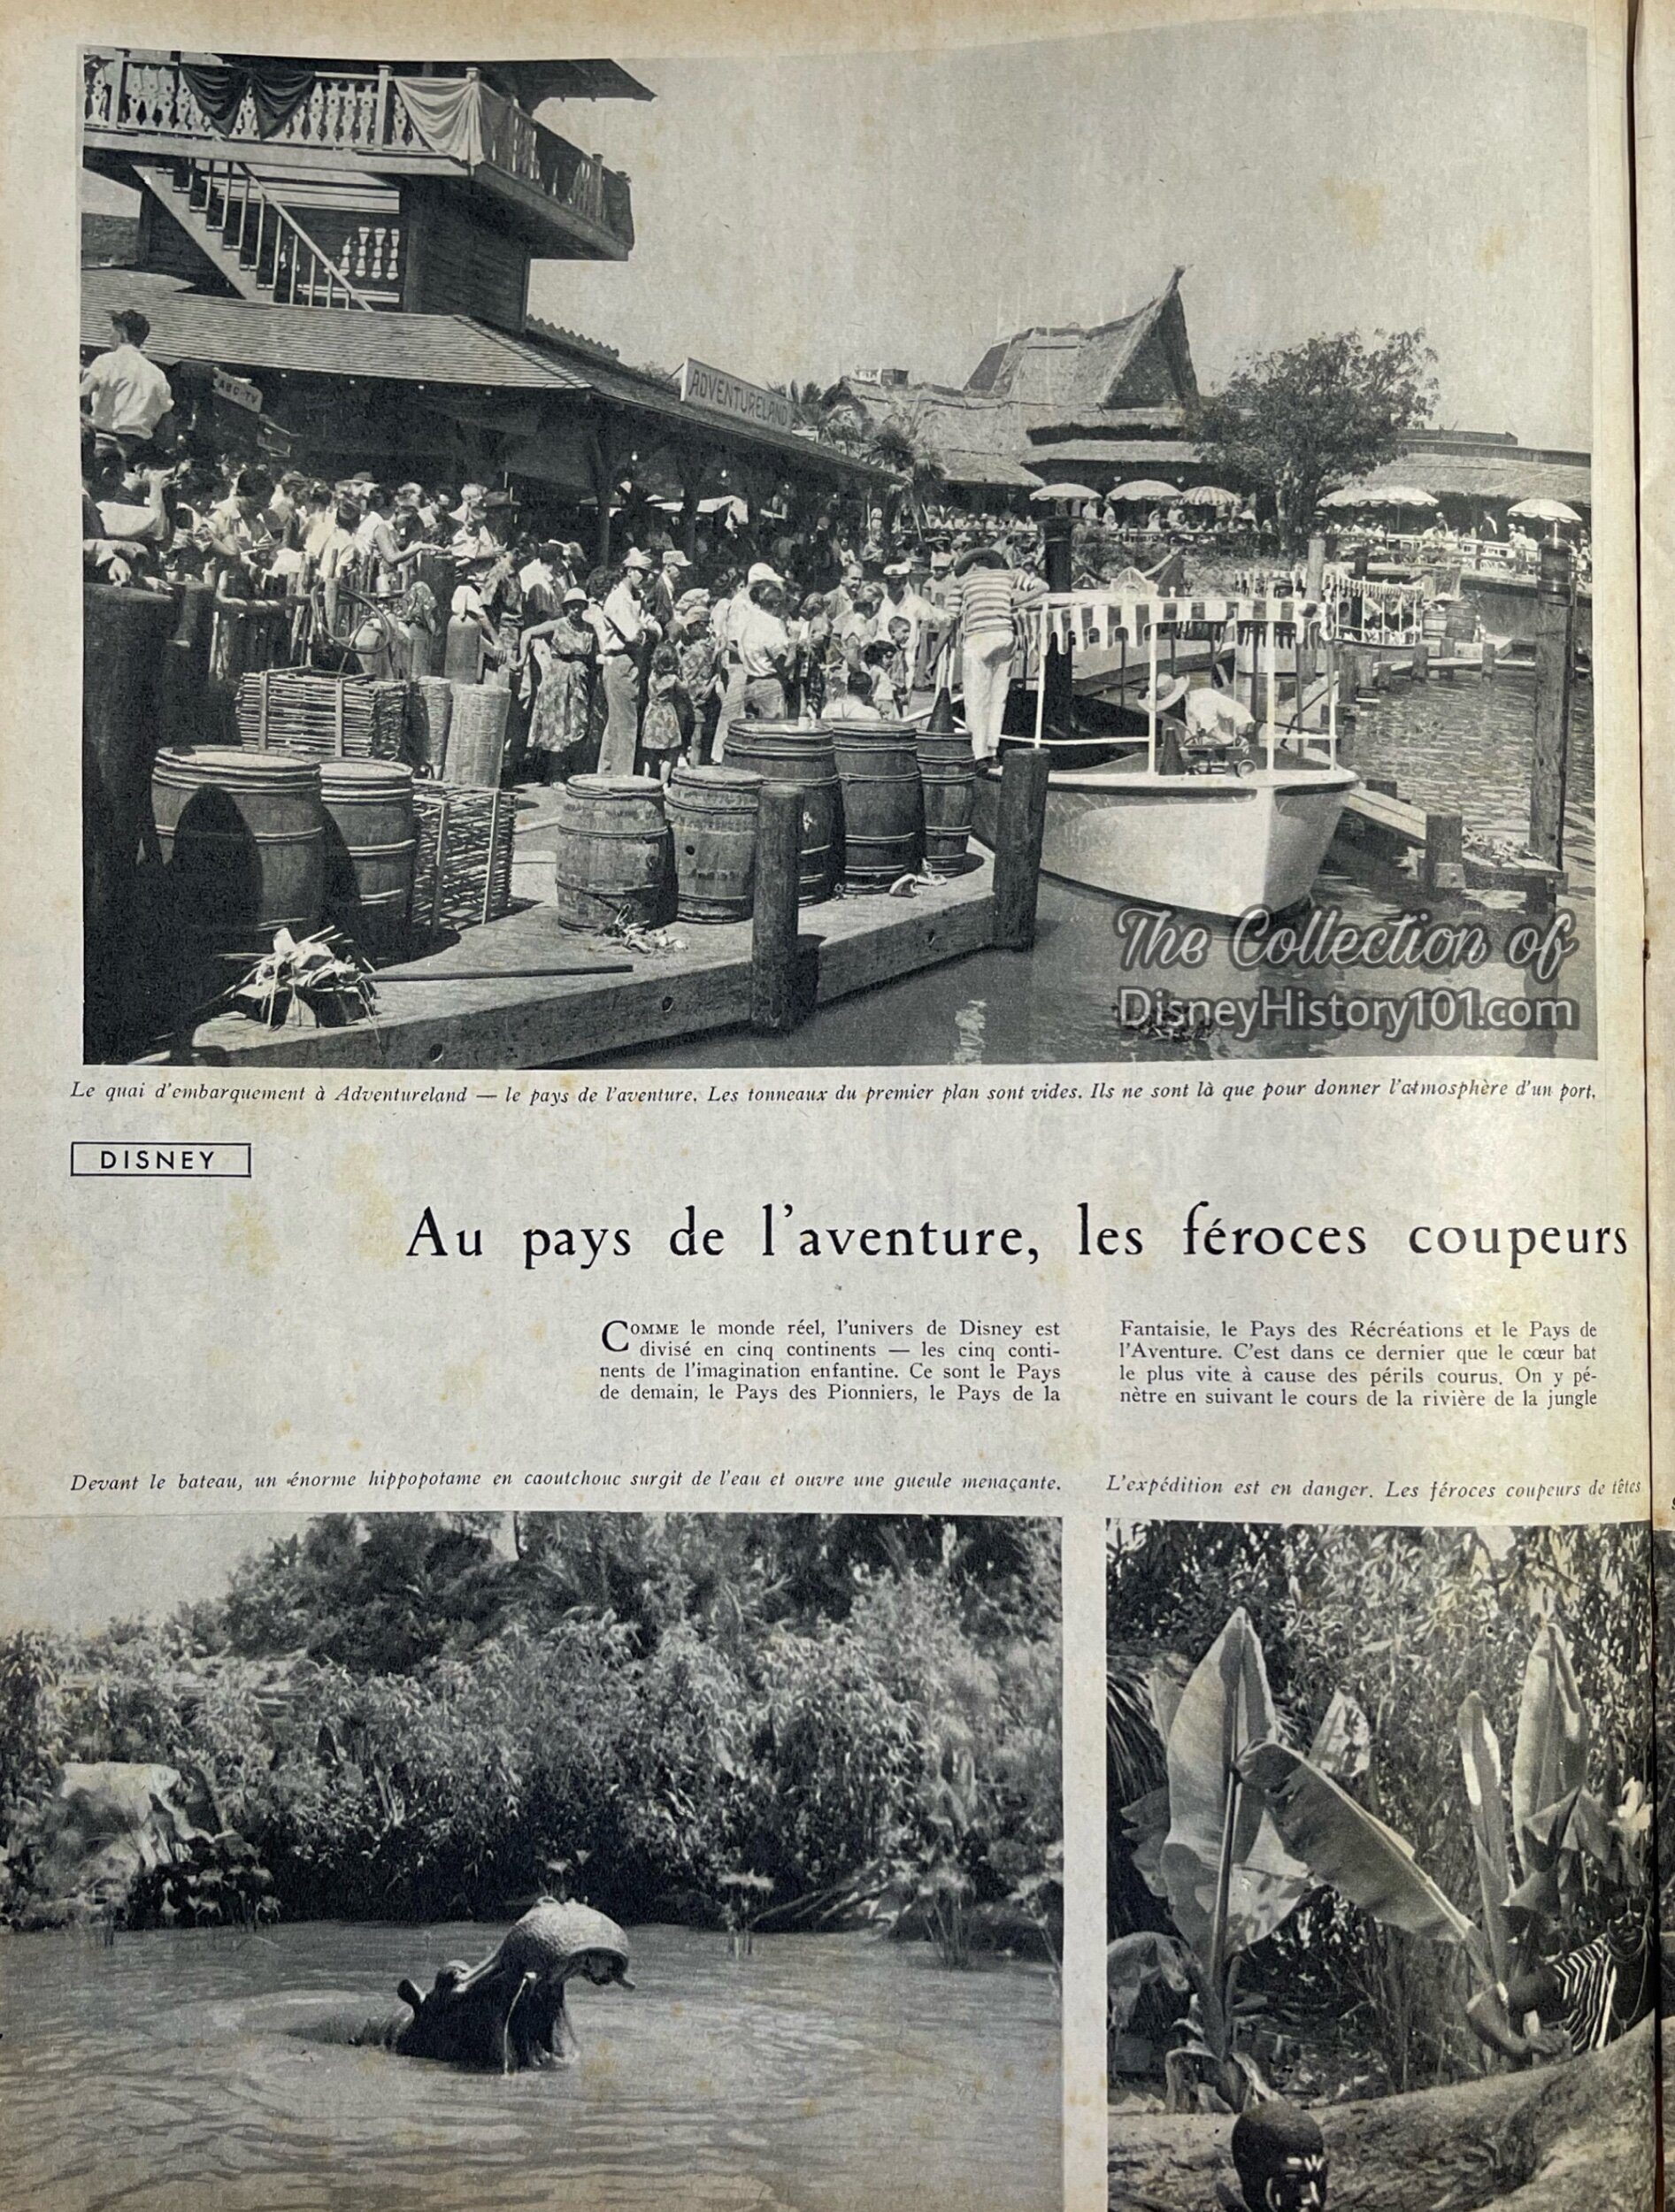 Paris Match, September 1955.